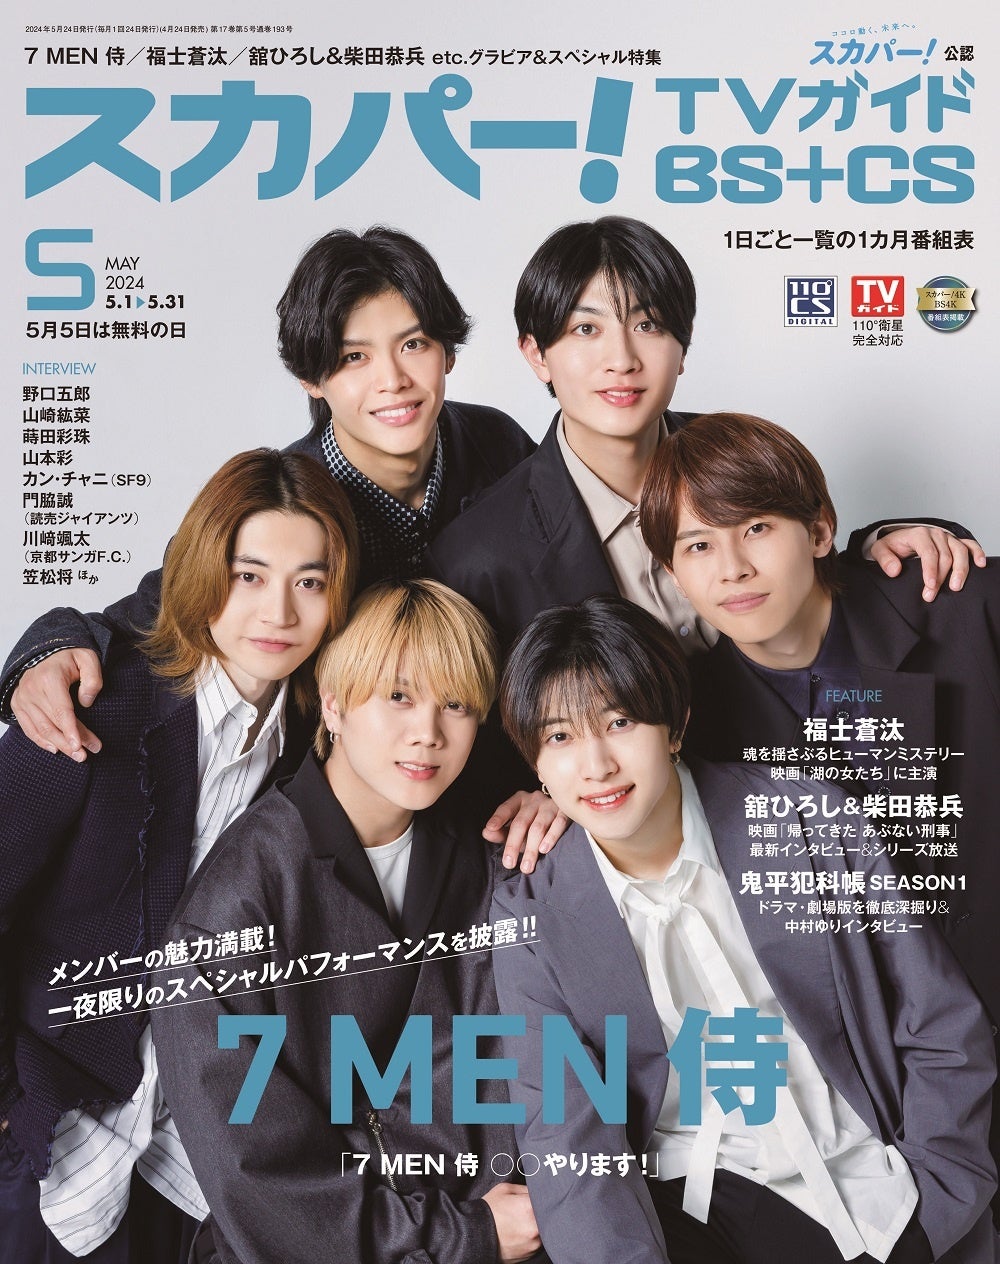 スカパー！TVガイドBS+CS5月号の表紙に、7 MEN 侍が登場！